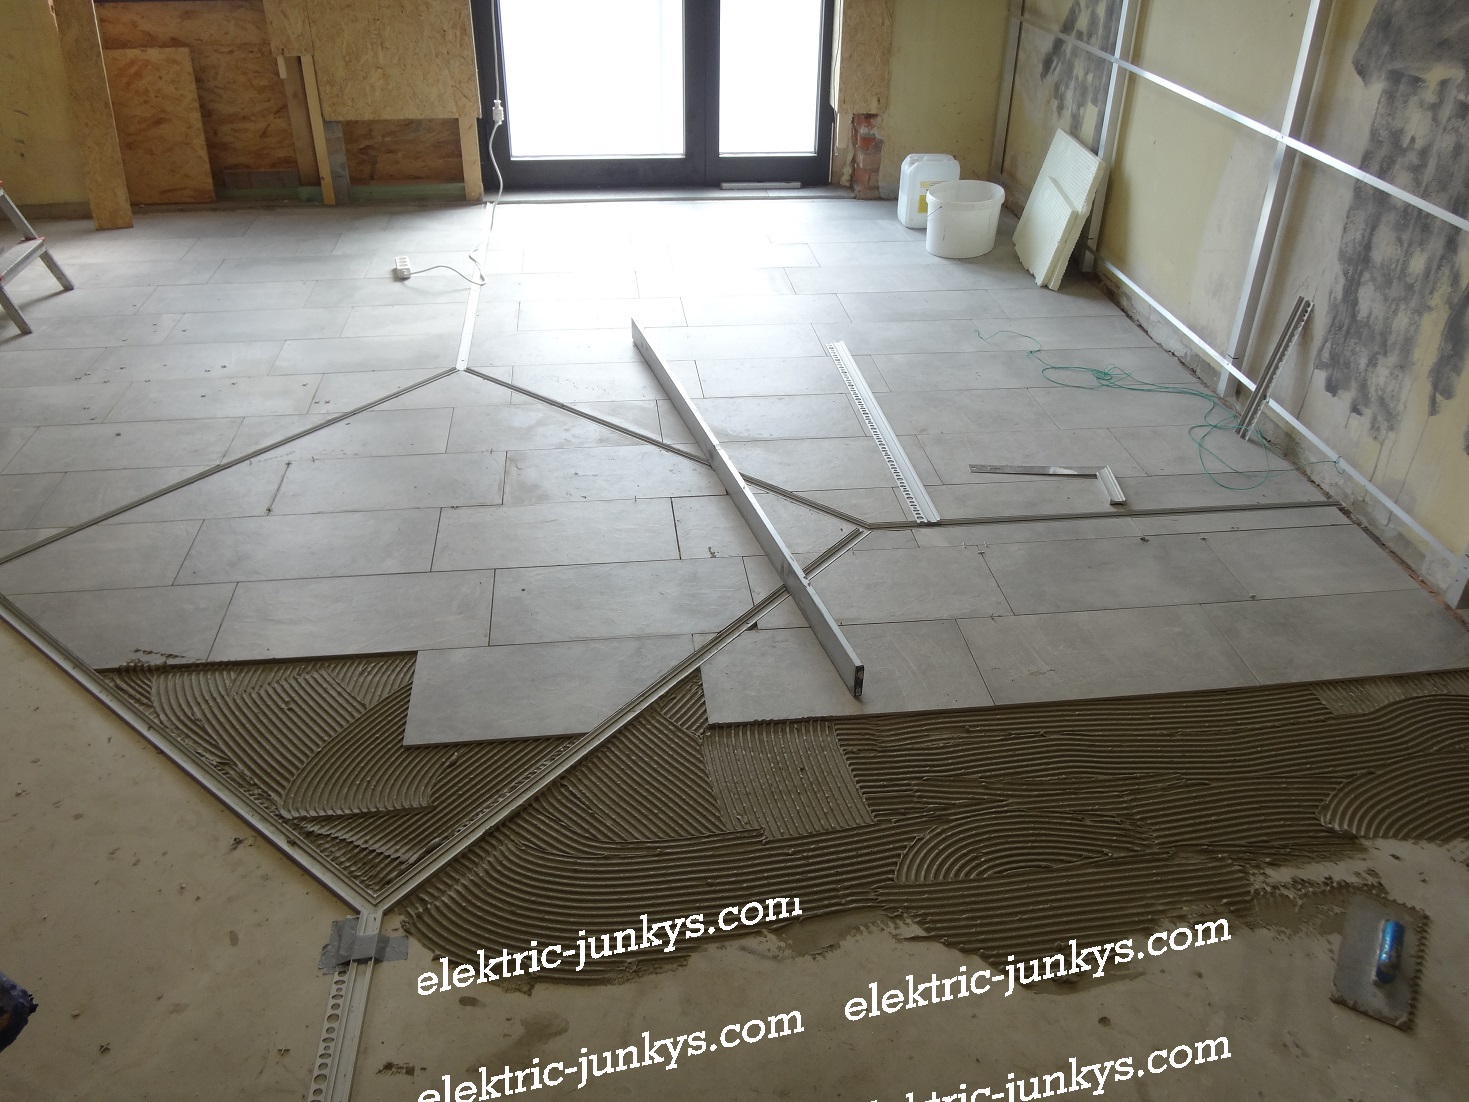 How To Led Floor Tiling System Diy Make, Led Floor Tiling System